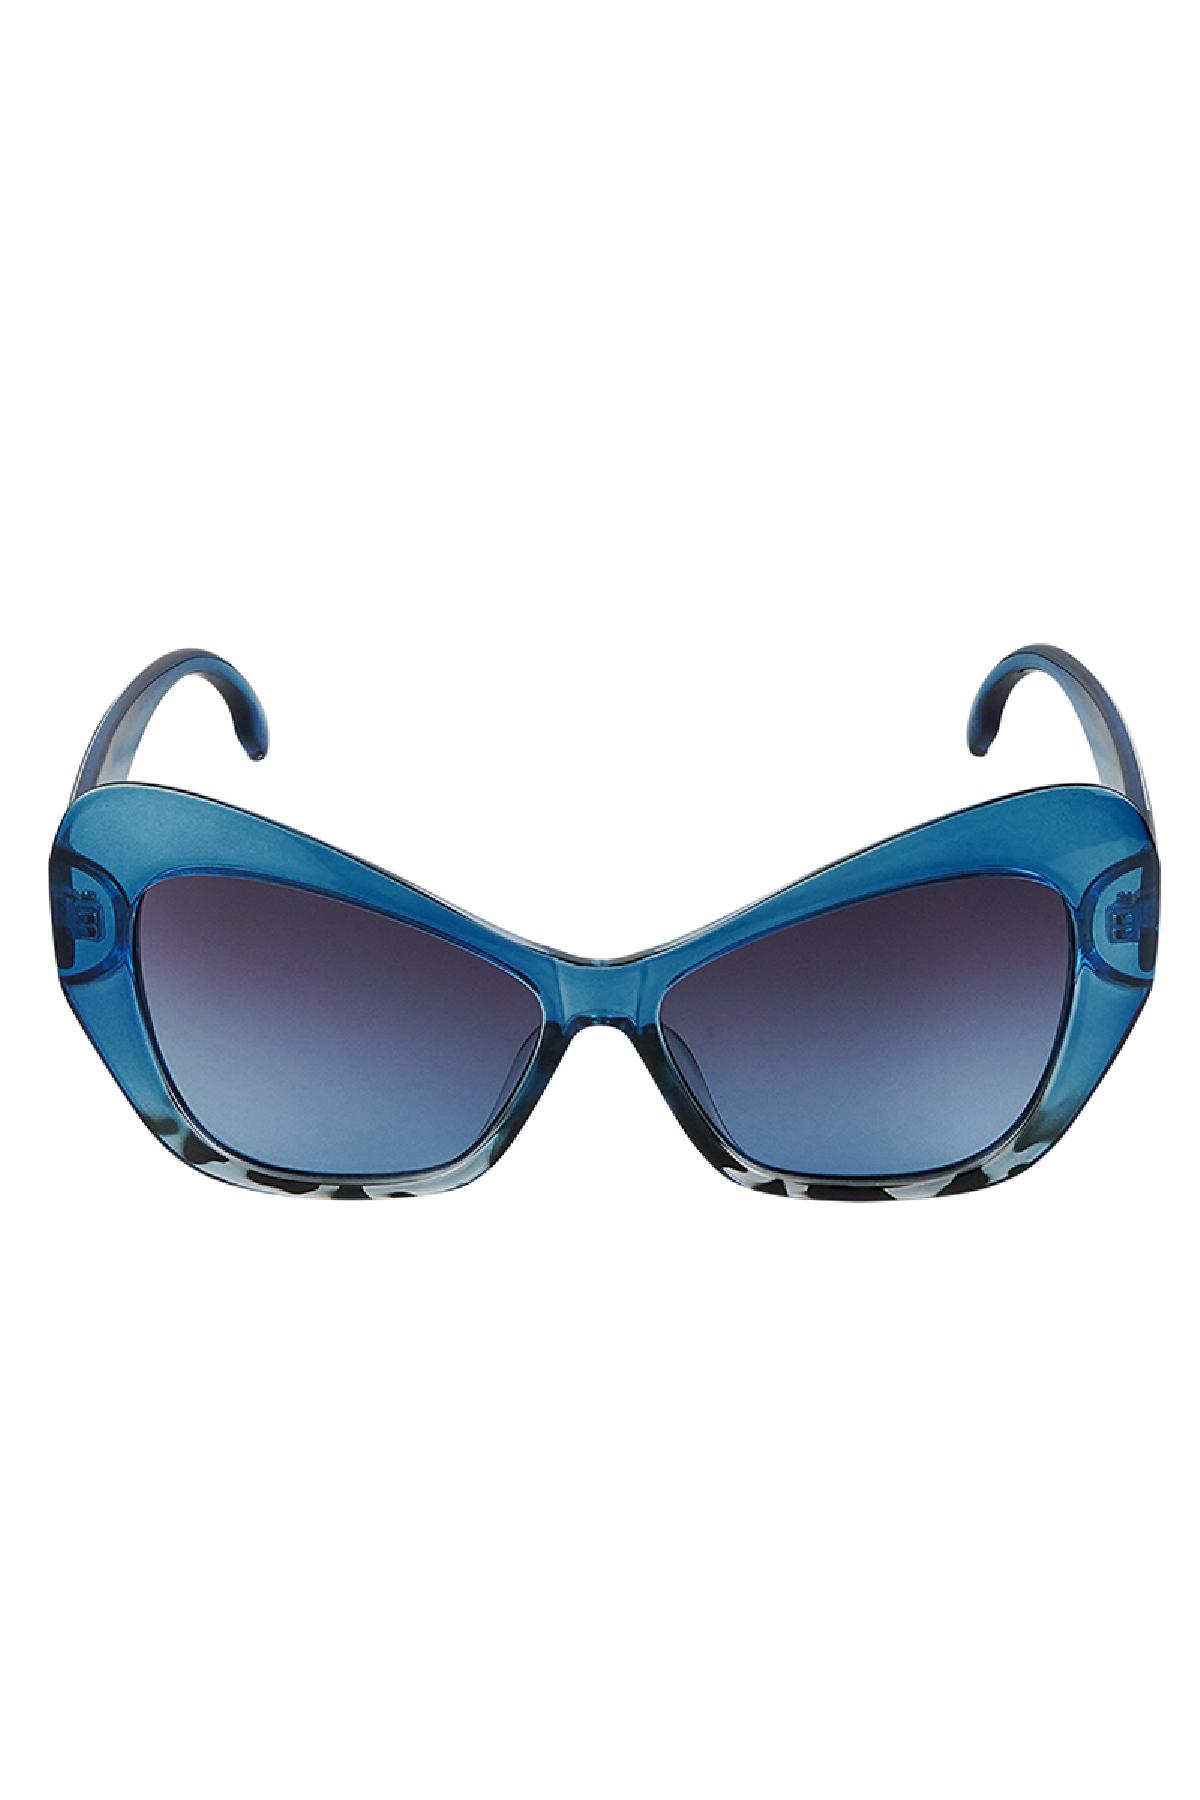 Déclaration de lunettes de soleil Bleu PC Taille unique Image3